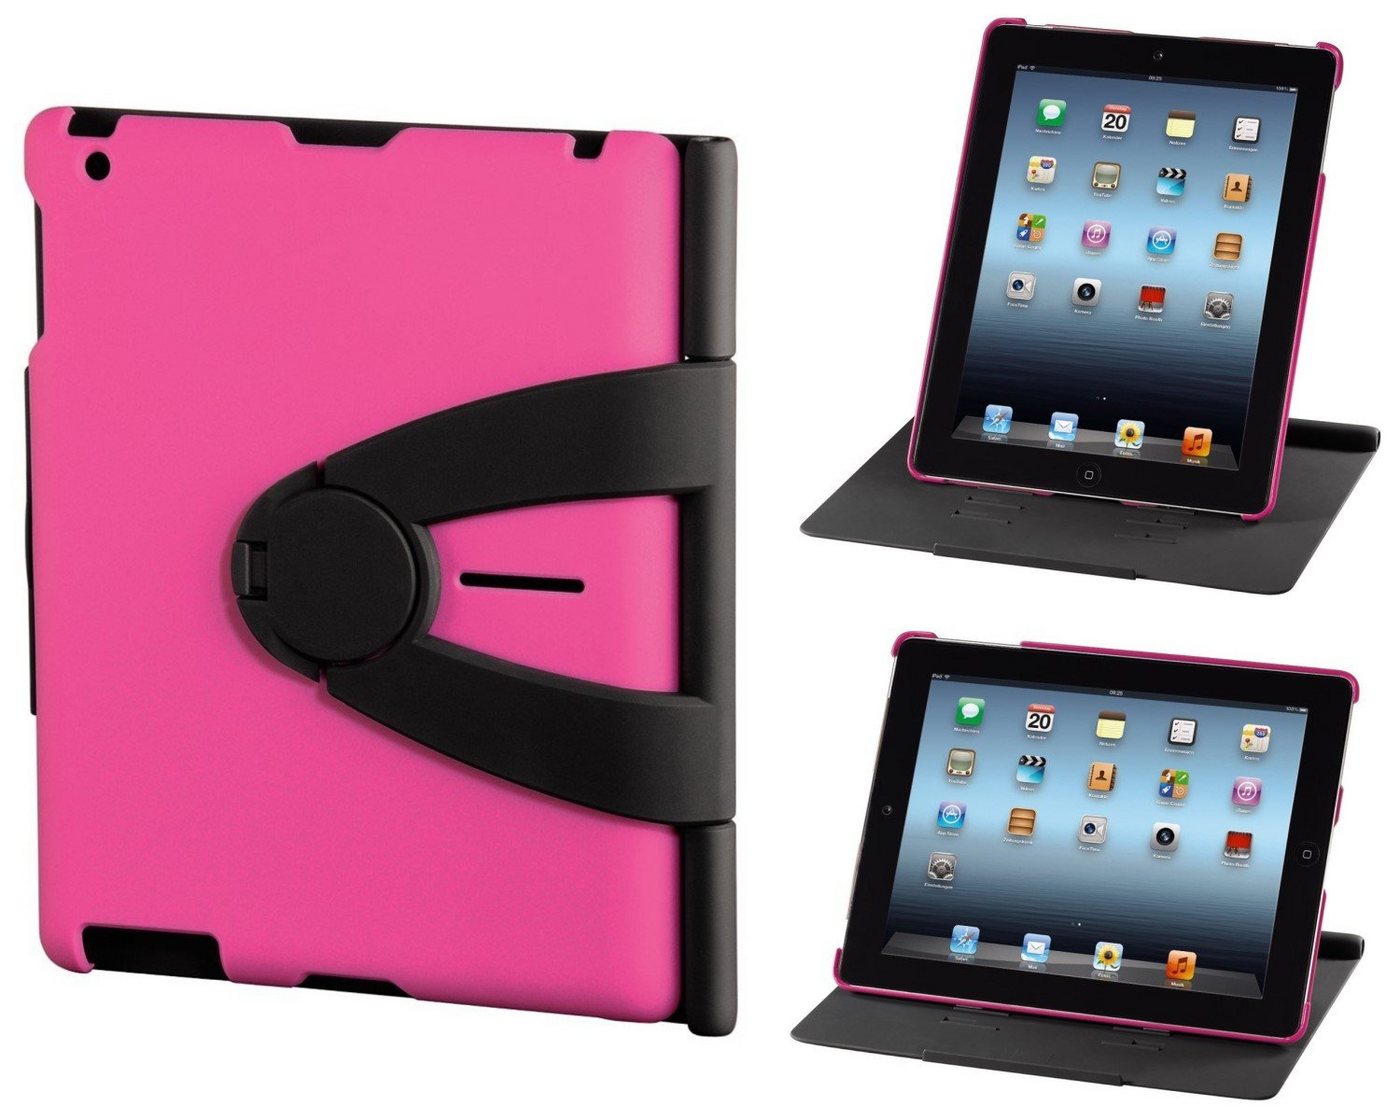 Hama Tablet-Hülle Cover Padfolio Case Tasche Ständer Etui Hülle, Klapp-Tasche für Apple iPad 4 3 4G 3G 2 2G, Stand-Funktion von Hama